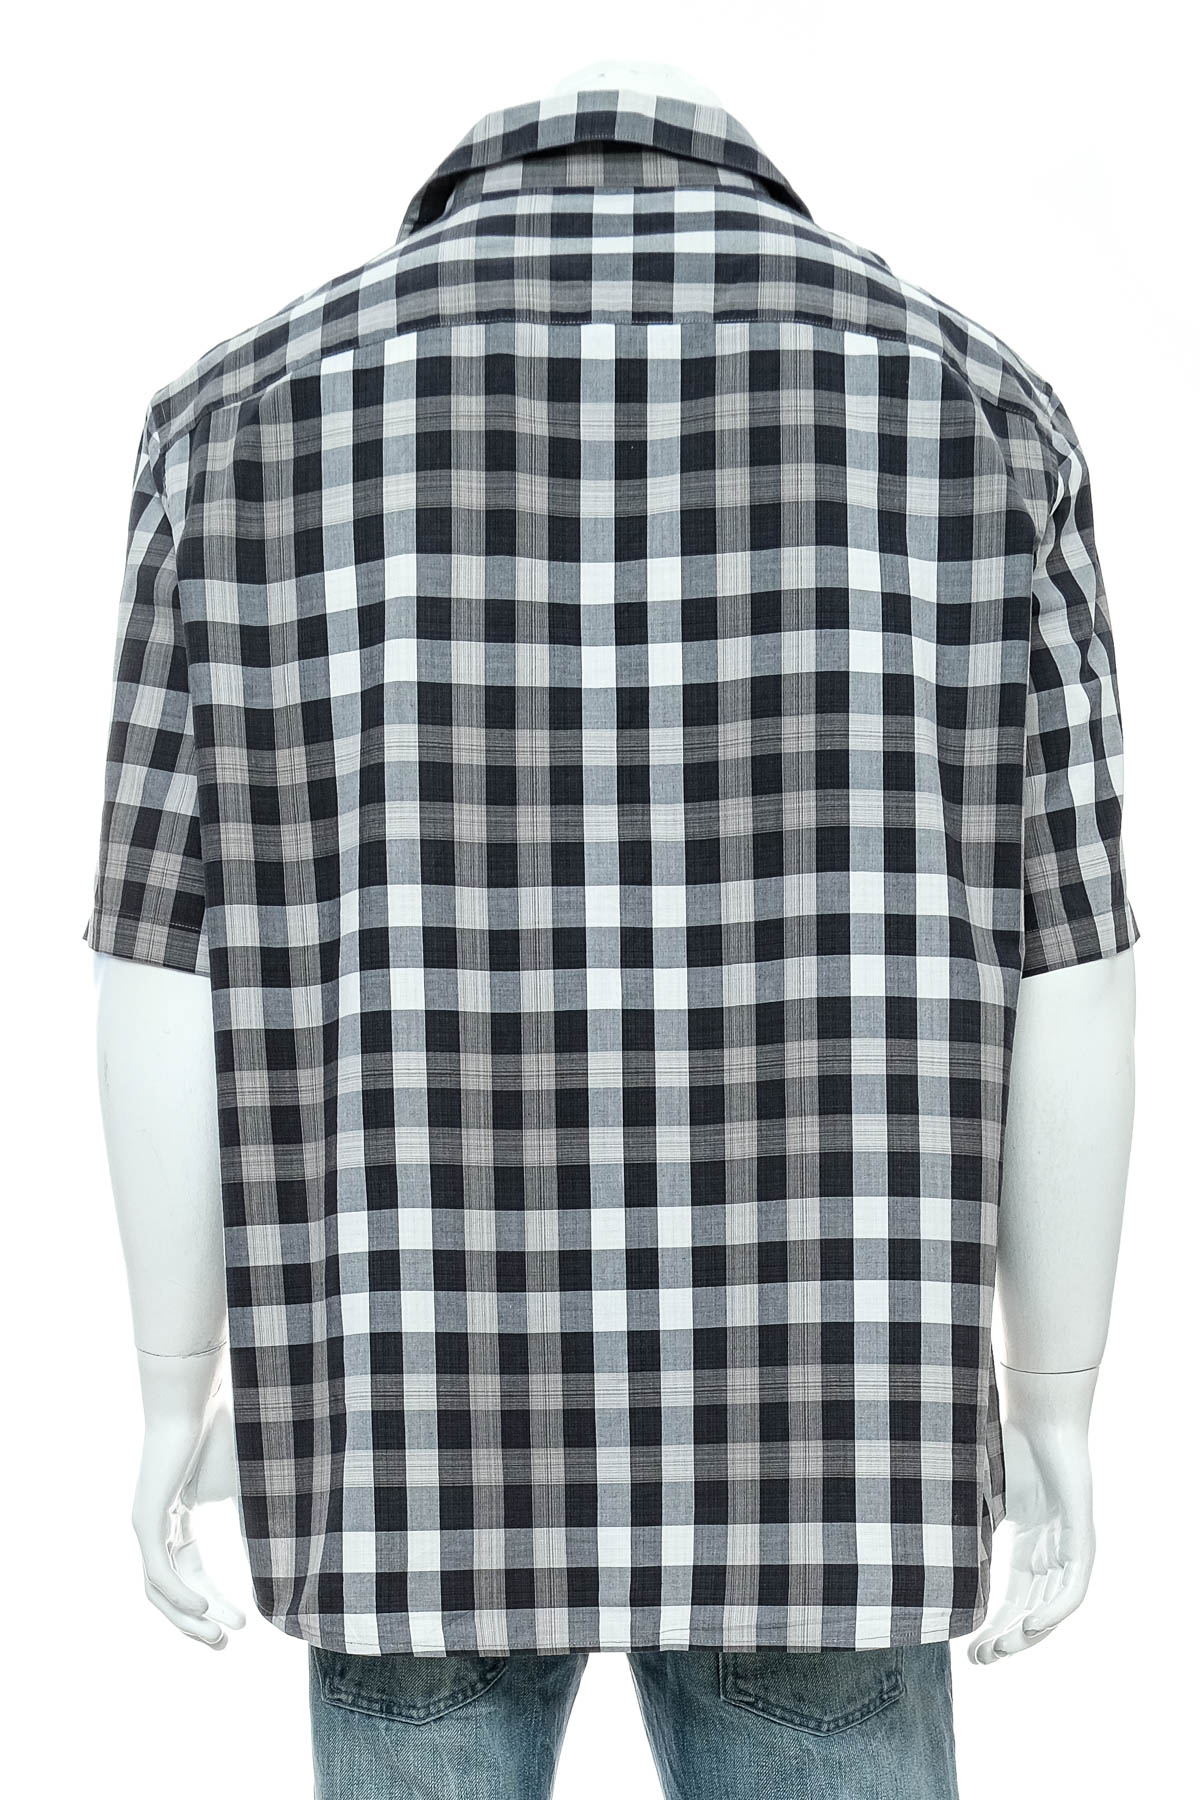 Men's shirt - Claiborne - 1